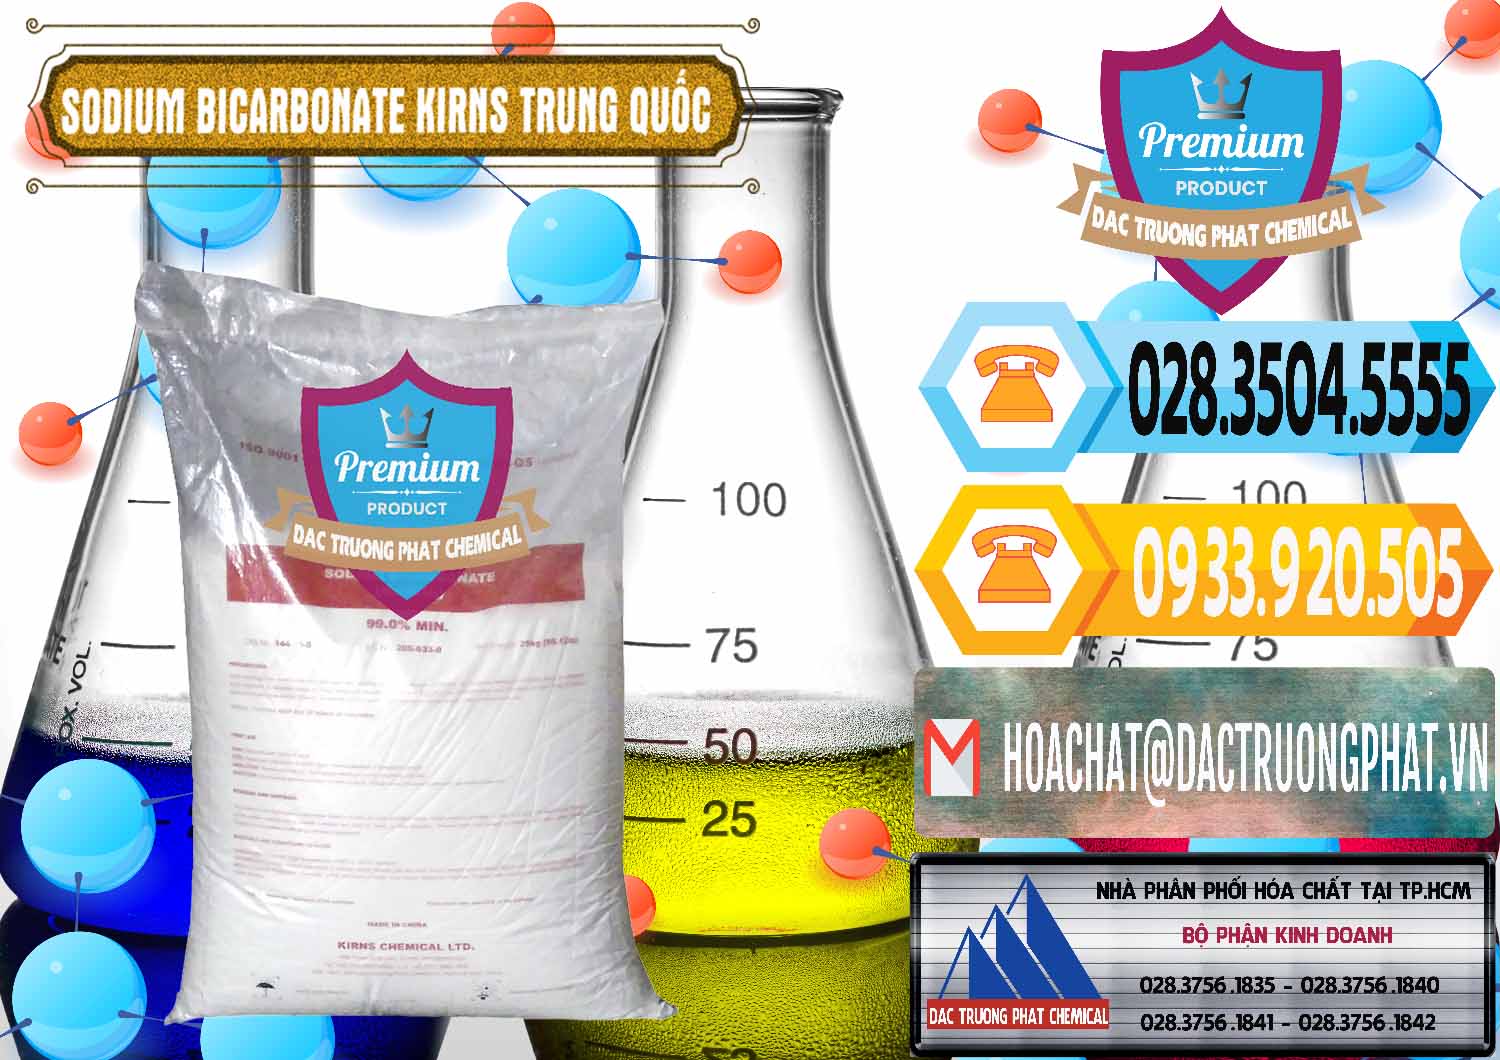 Chuyên cung cấp - bán Sodium Bicarbonate – Bicar NaHCO3 Food Grade Kirns Trung Quốc - 0217 - Công ty phân phối - cung cấp hóa chất tại TP.HCM - hoachattayrua.net